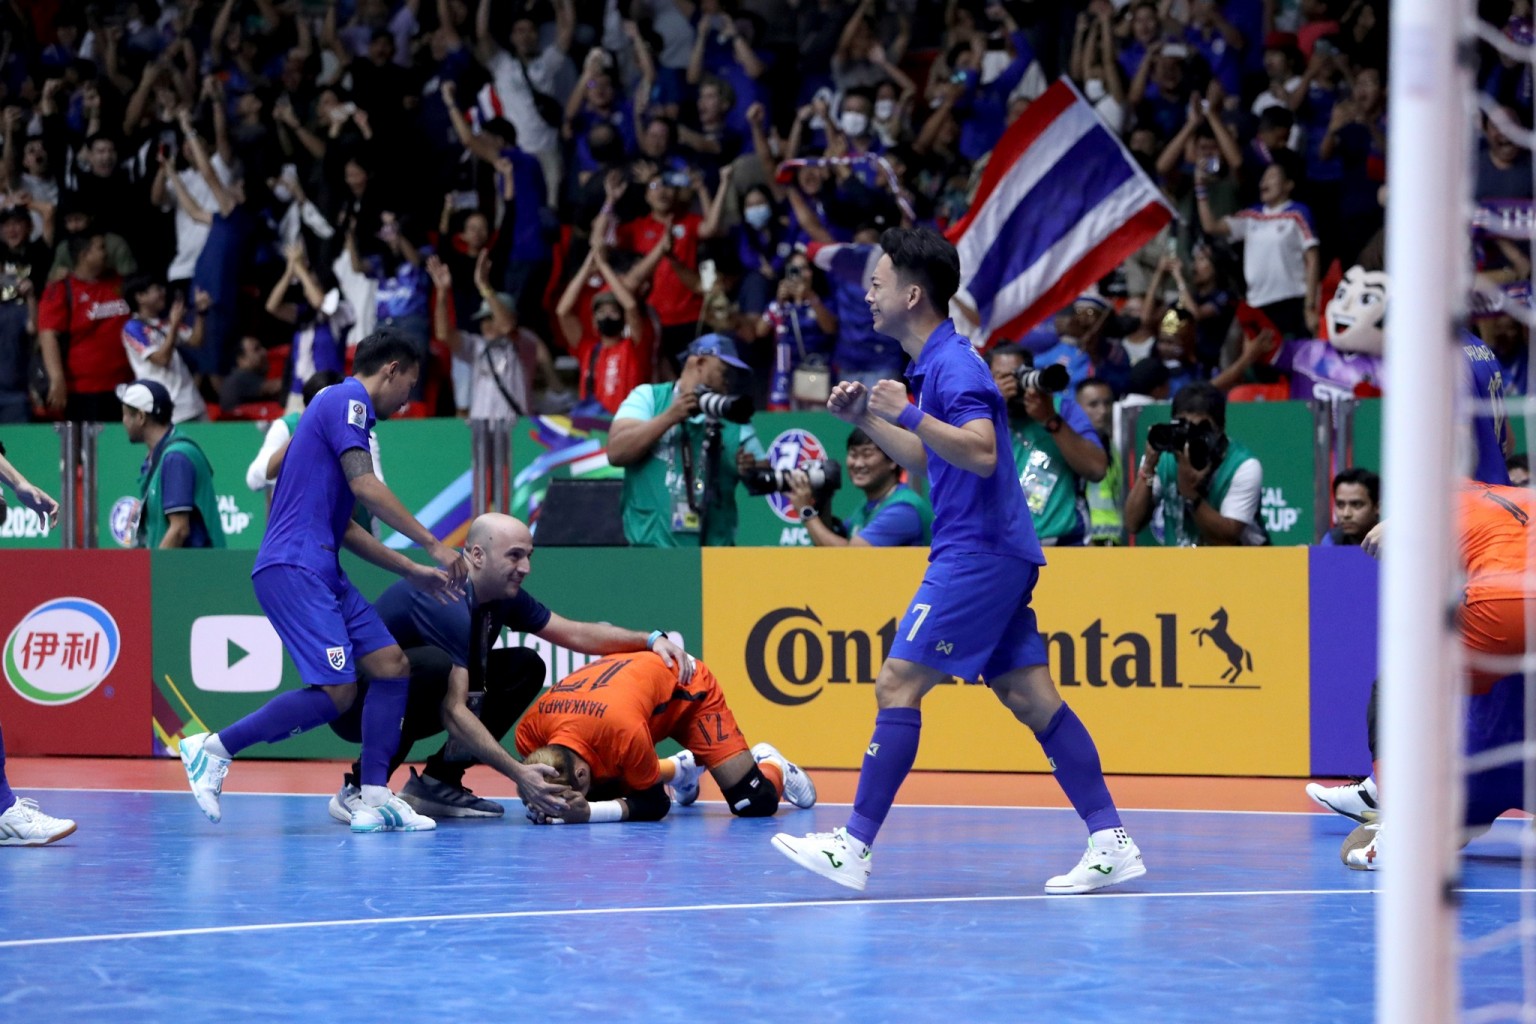 อัปเดต ตารางการแข่งขัน ถ่ายทอดสด ฟุตซอลทีมชาติไทย รอบชิงฯ เอเชี่ยนคัพ 2024